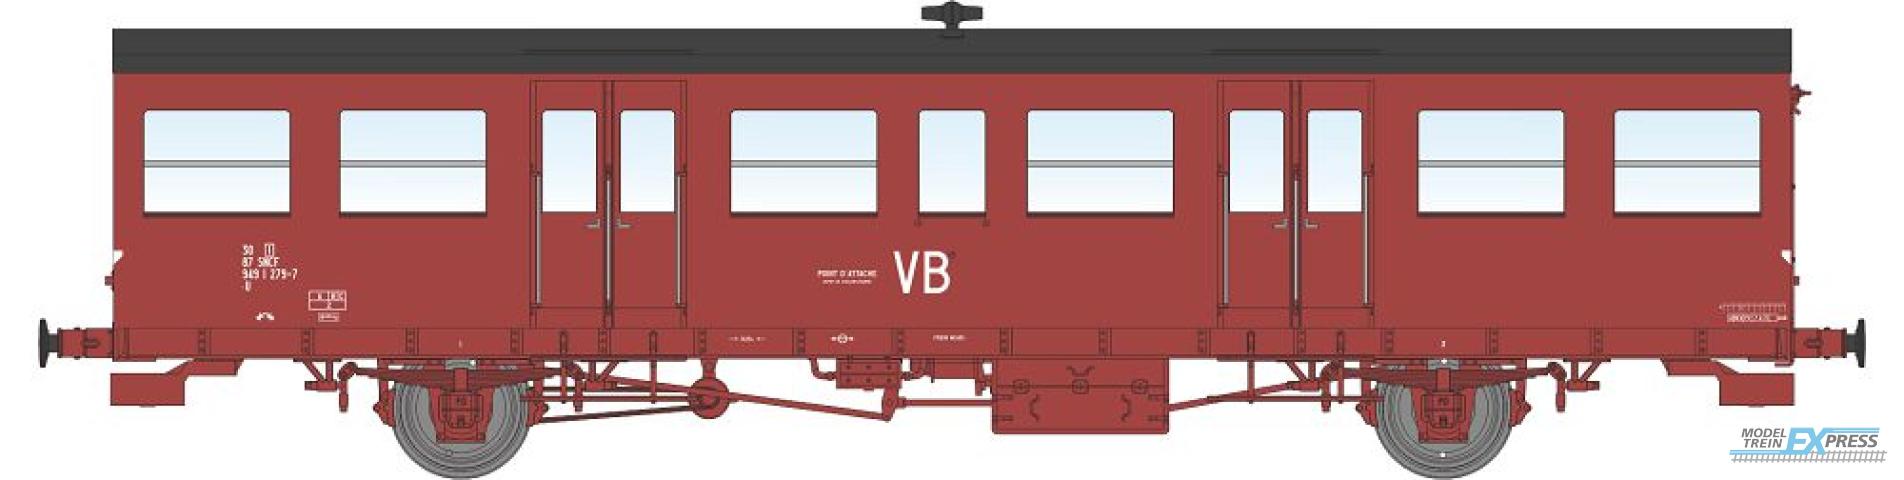 REE models VB-155 Southwest Car, little gutters, modern lantern holder, Red VB Era IV